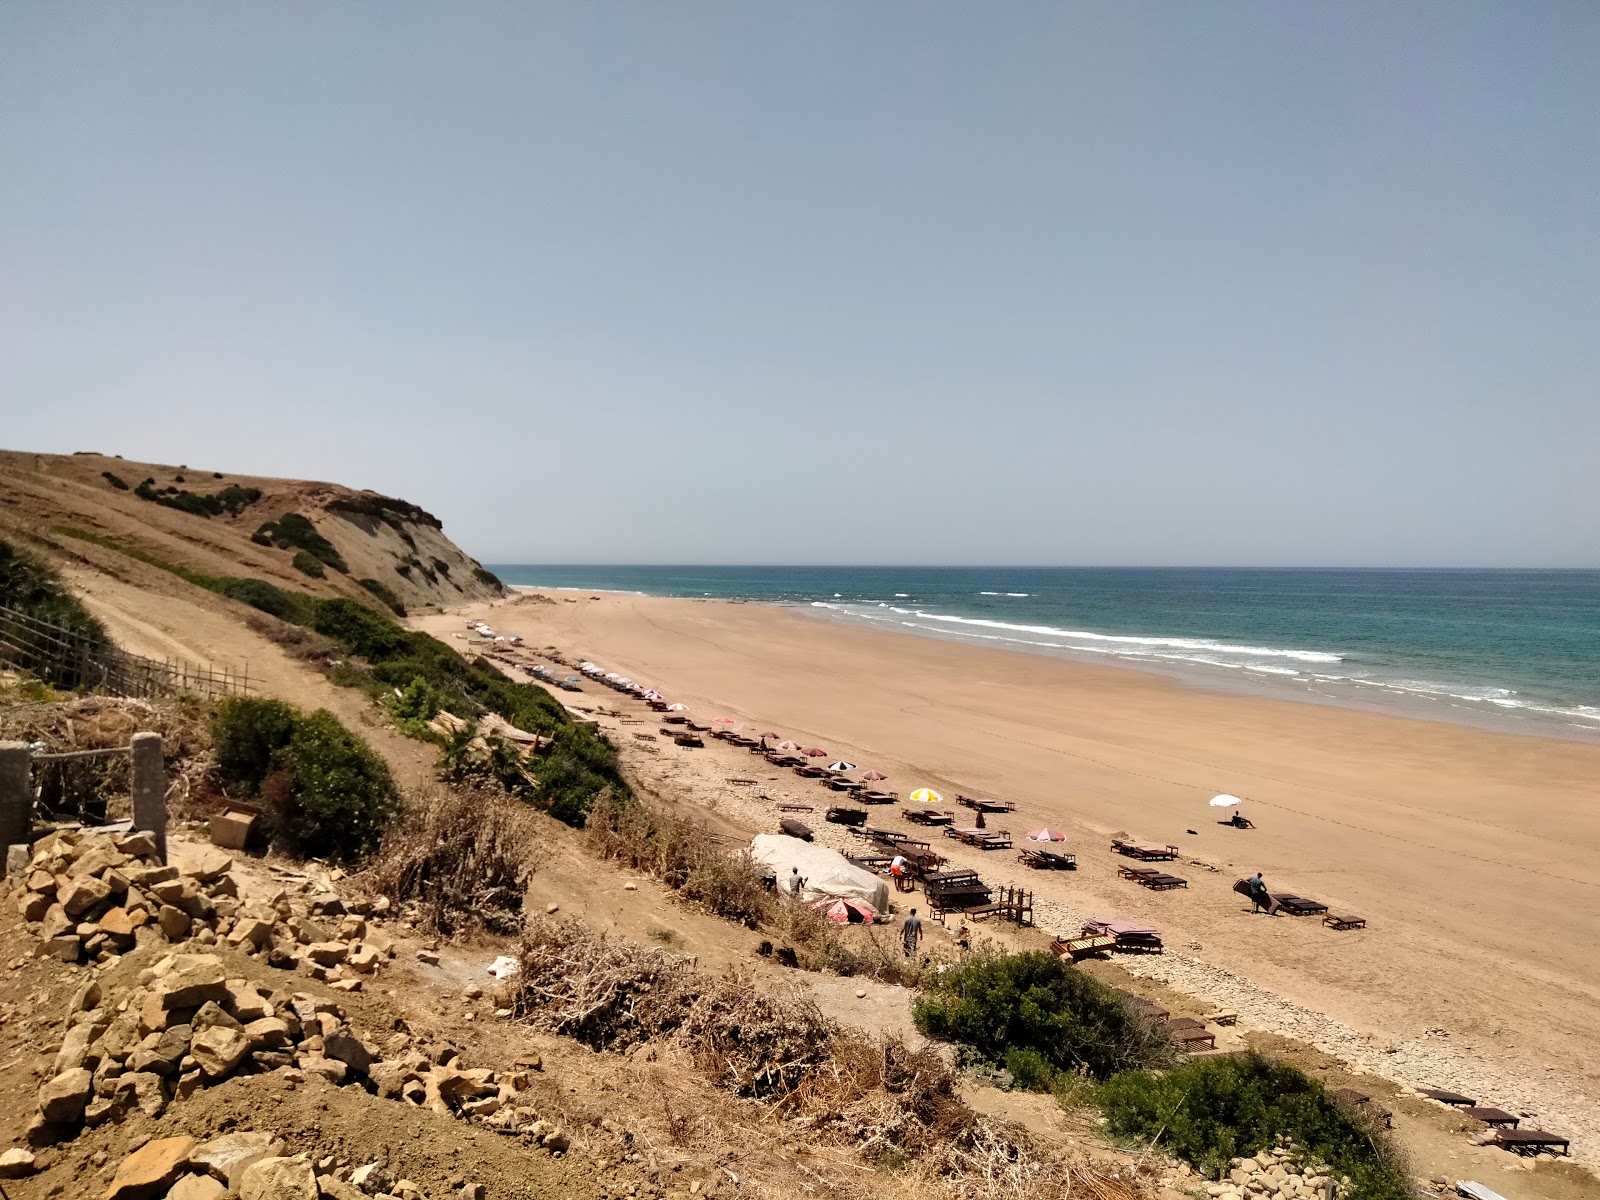 Plage Sidi Mghayet'in fotoğrafı parlak ince kum yüzey ile